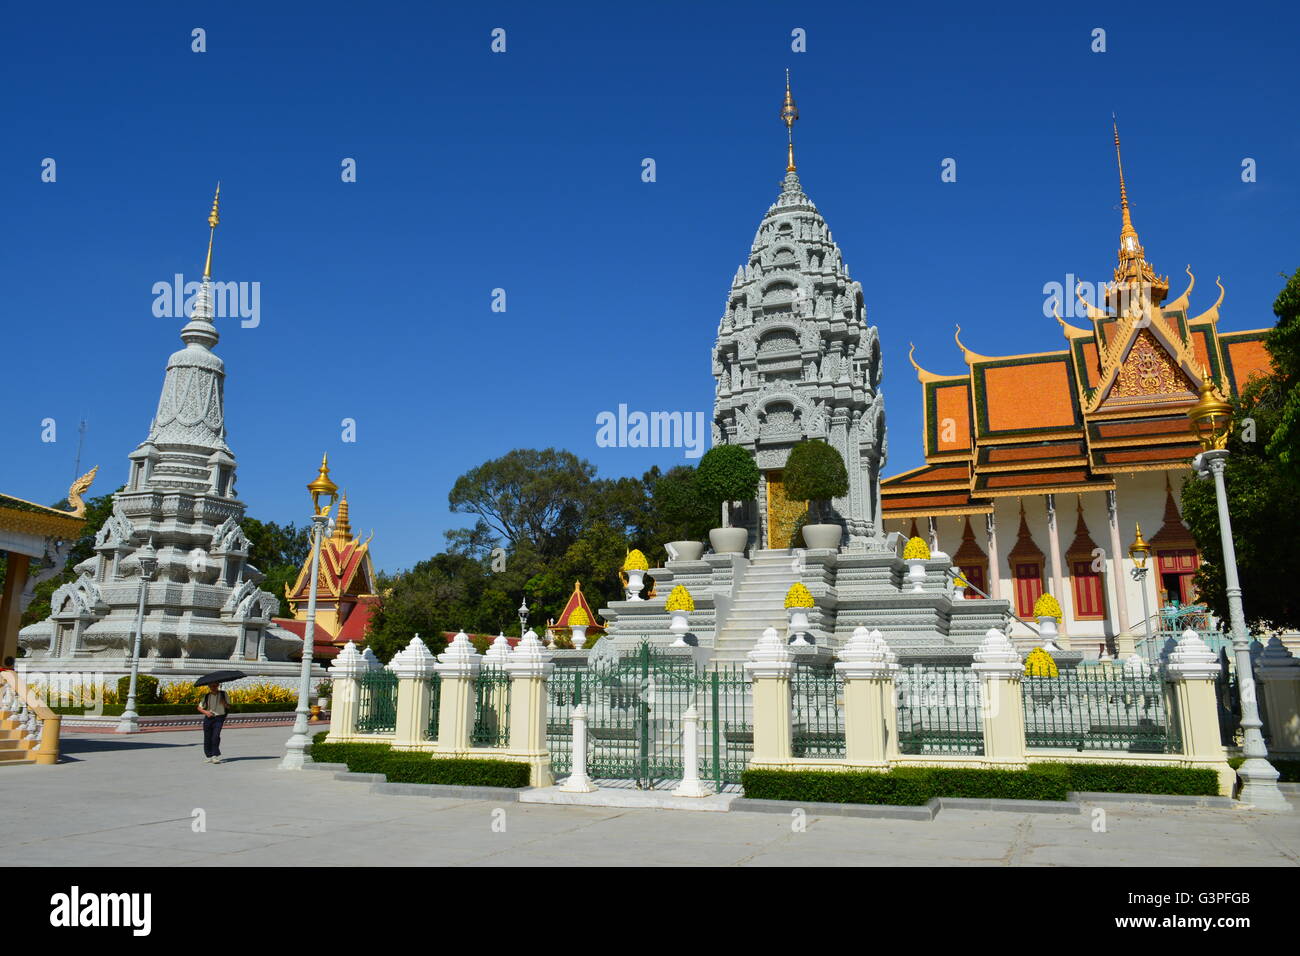 Königspalast und Silber-Pagode Phnom Penh Kambodscha Kambodscha Asien antike Architektur König Norodom Reisen und landschaftlichen Sehenswürdigkeiten Stockfoto